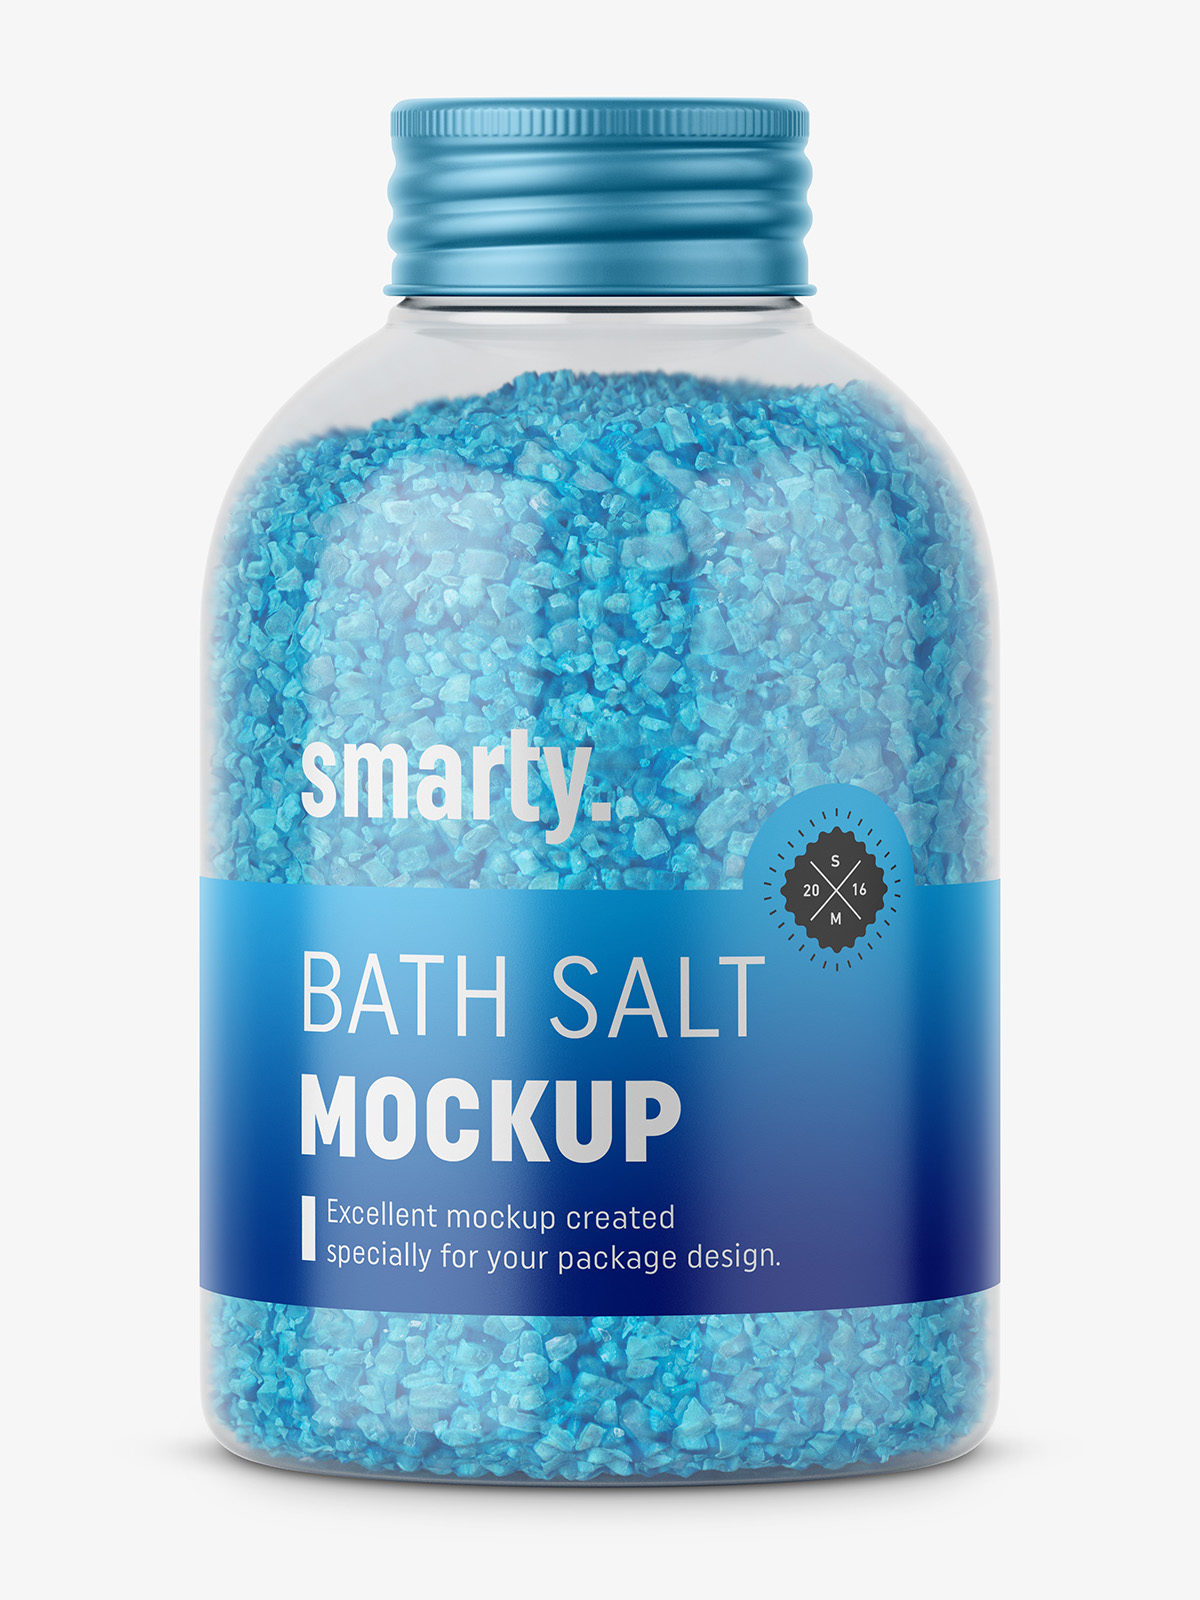 Bath salt mockup / blue - Smarty Mockups